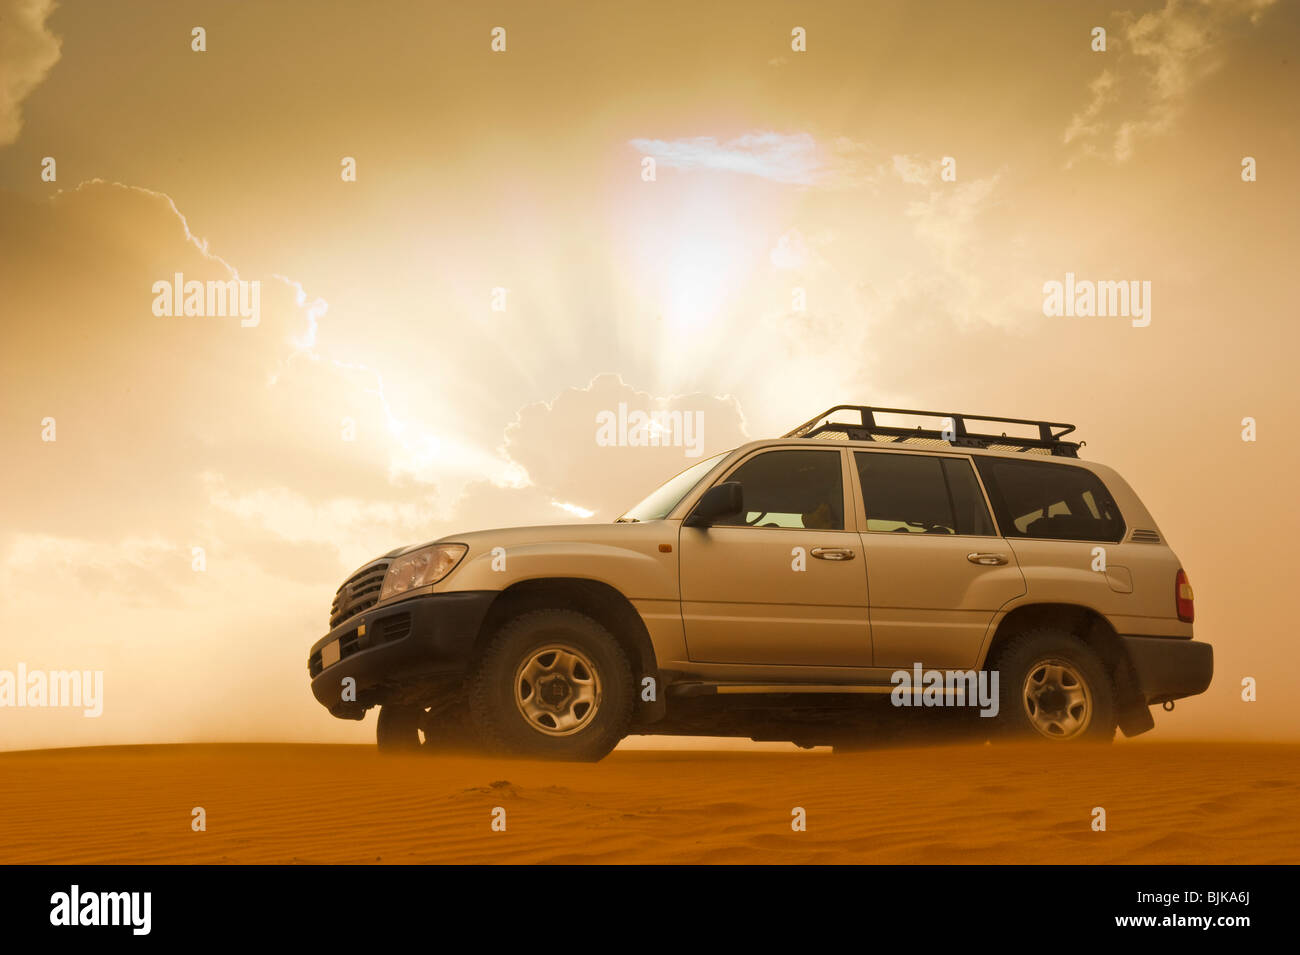 Si tratta di una immagine di un veicolo 4x4 nel mezzo del deserto. Foto Stock